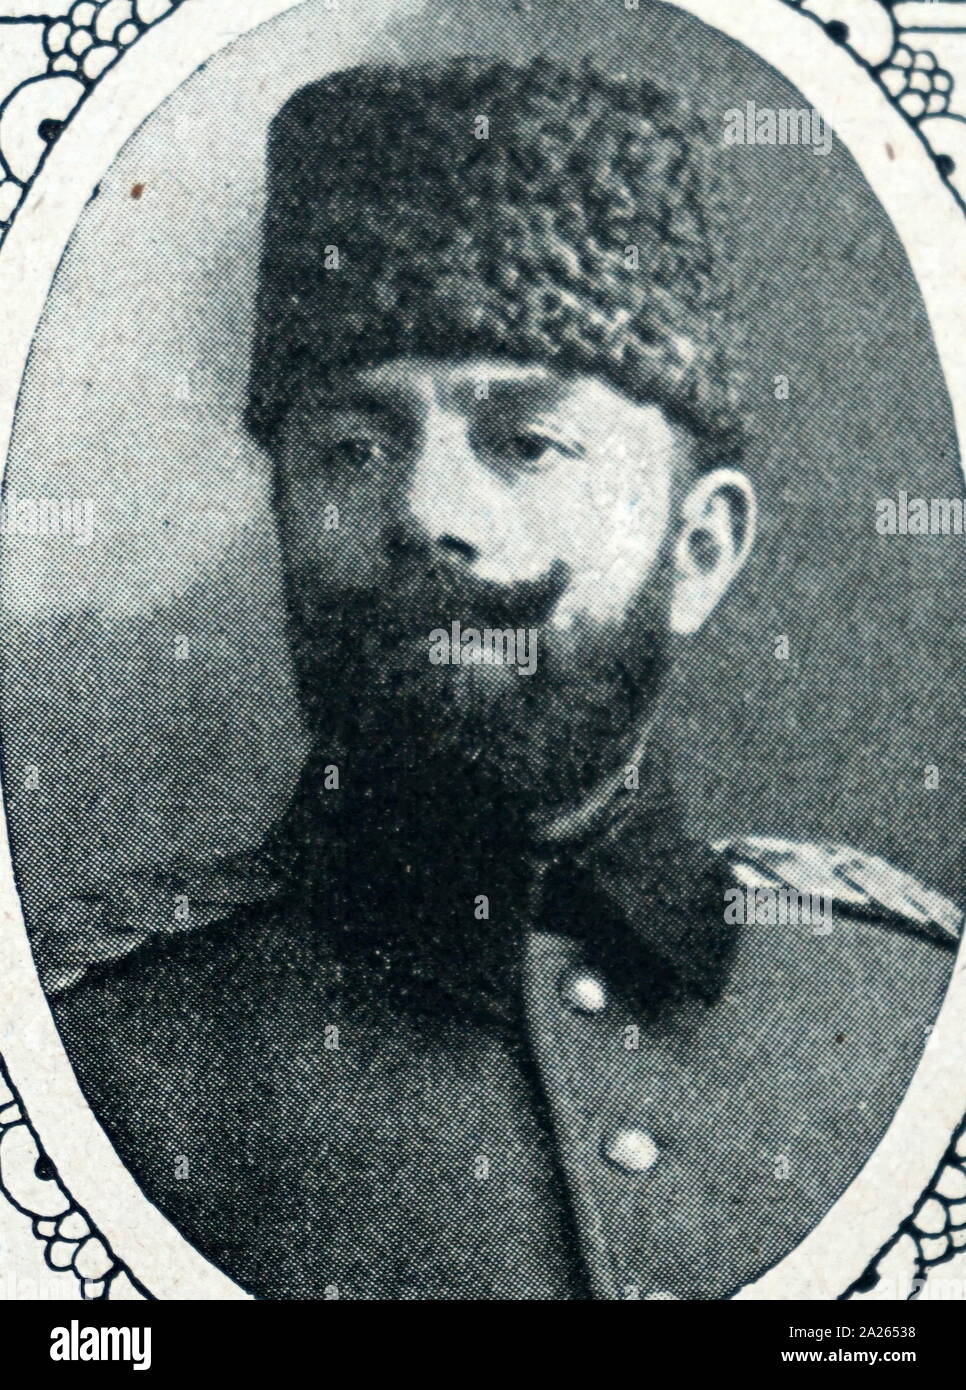 Ahmed Djemal Pascià (1872 - 1922), comunemente noto come Jamal Pasha il sanguinario; Ottomano leader militare e un terzo del triumvirato militare conosciuta come le tre impero ottomano (chiamato anche "Tre dittatori") che ha governato l'Impero Ottomano durante la guerra mondiale I. Foto Stock